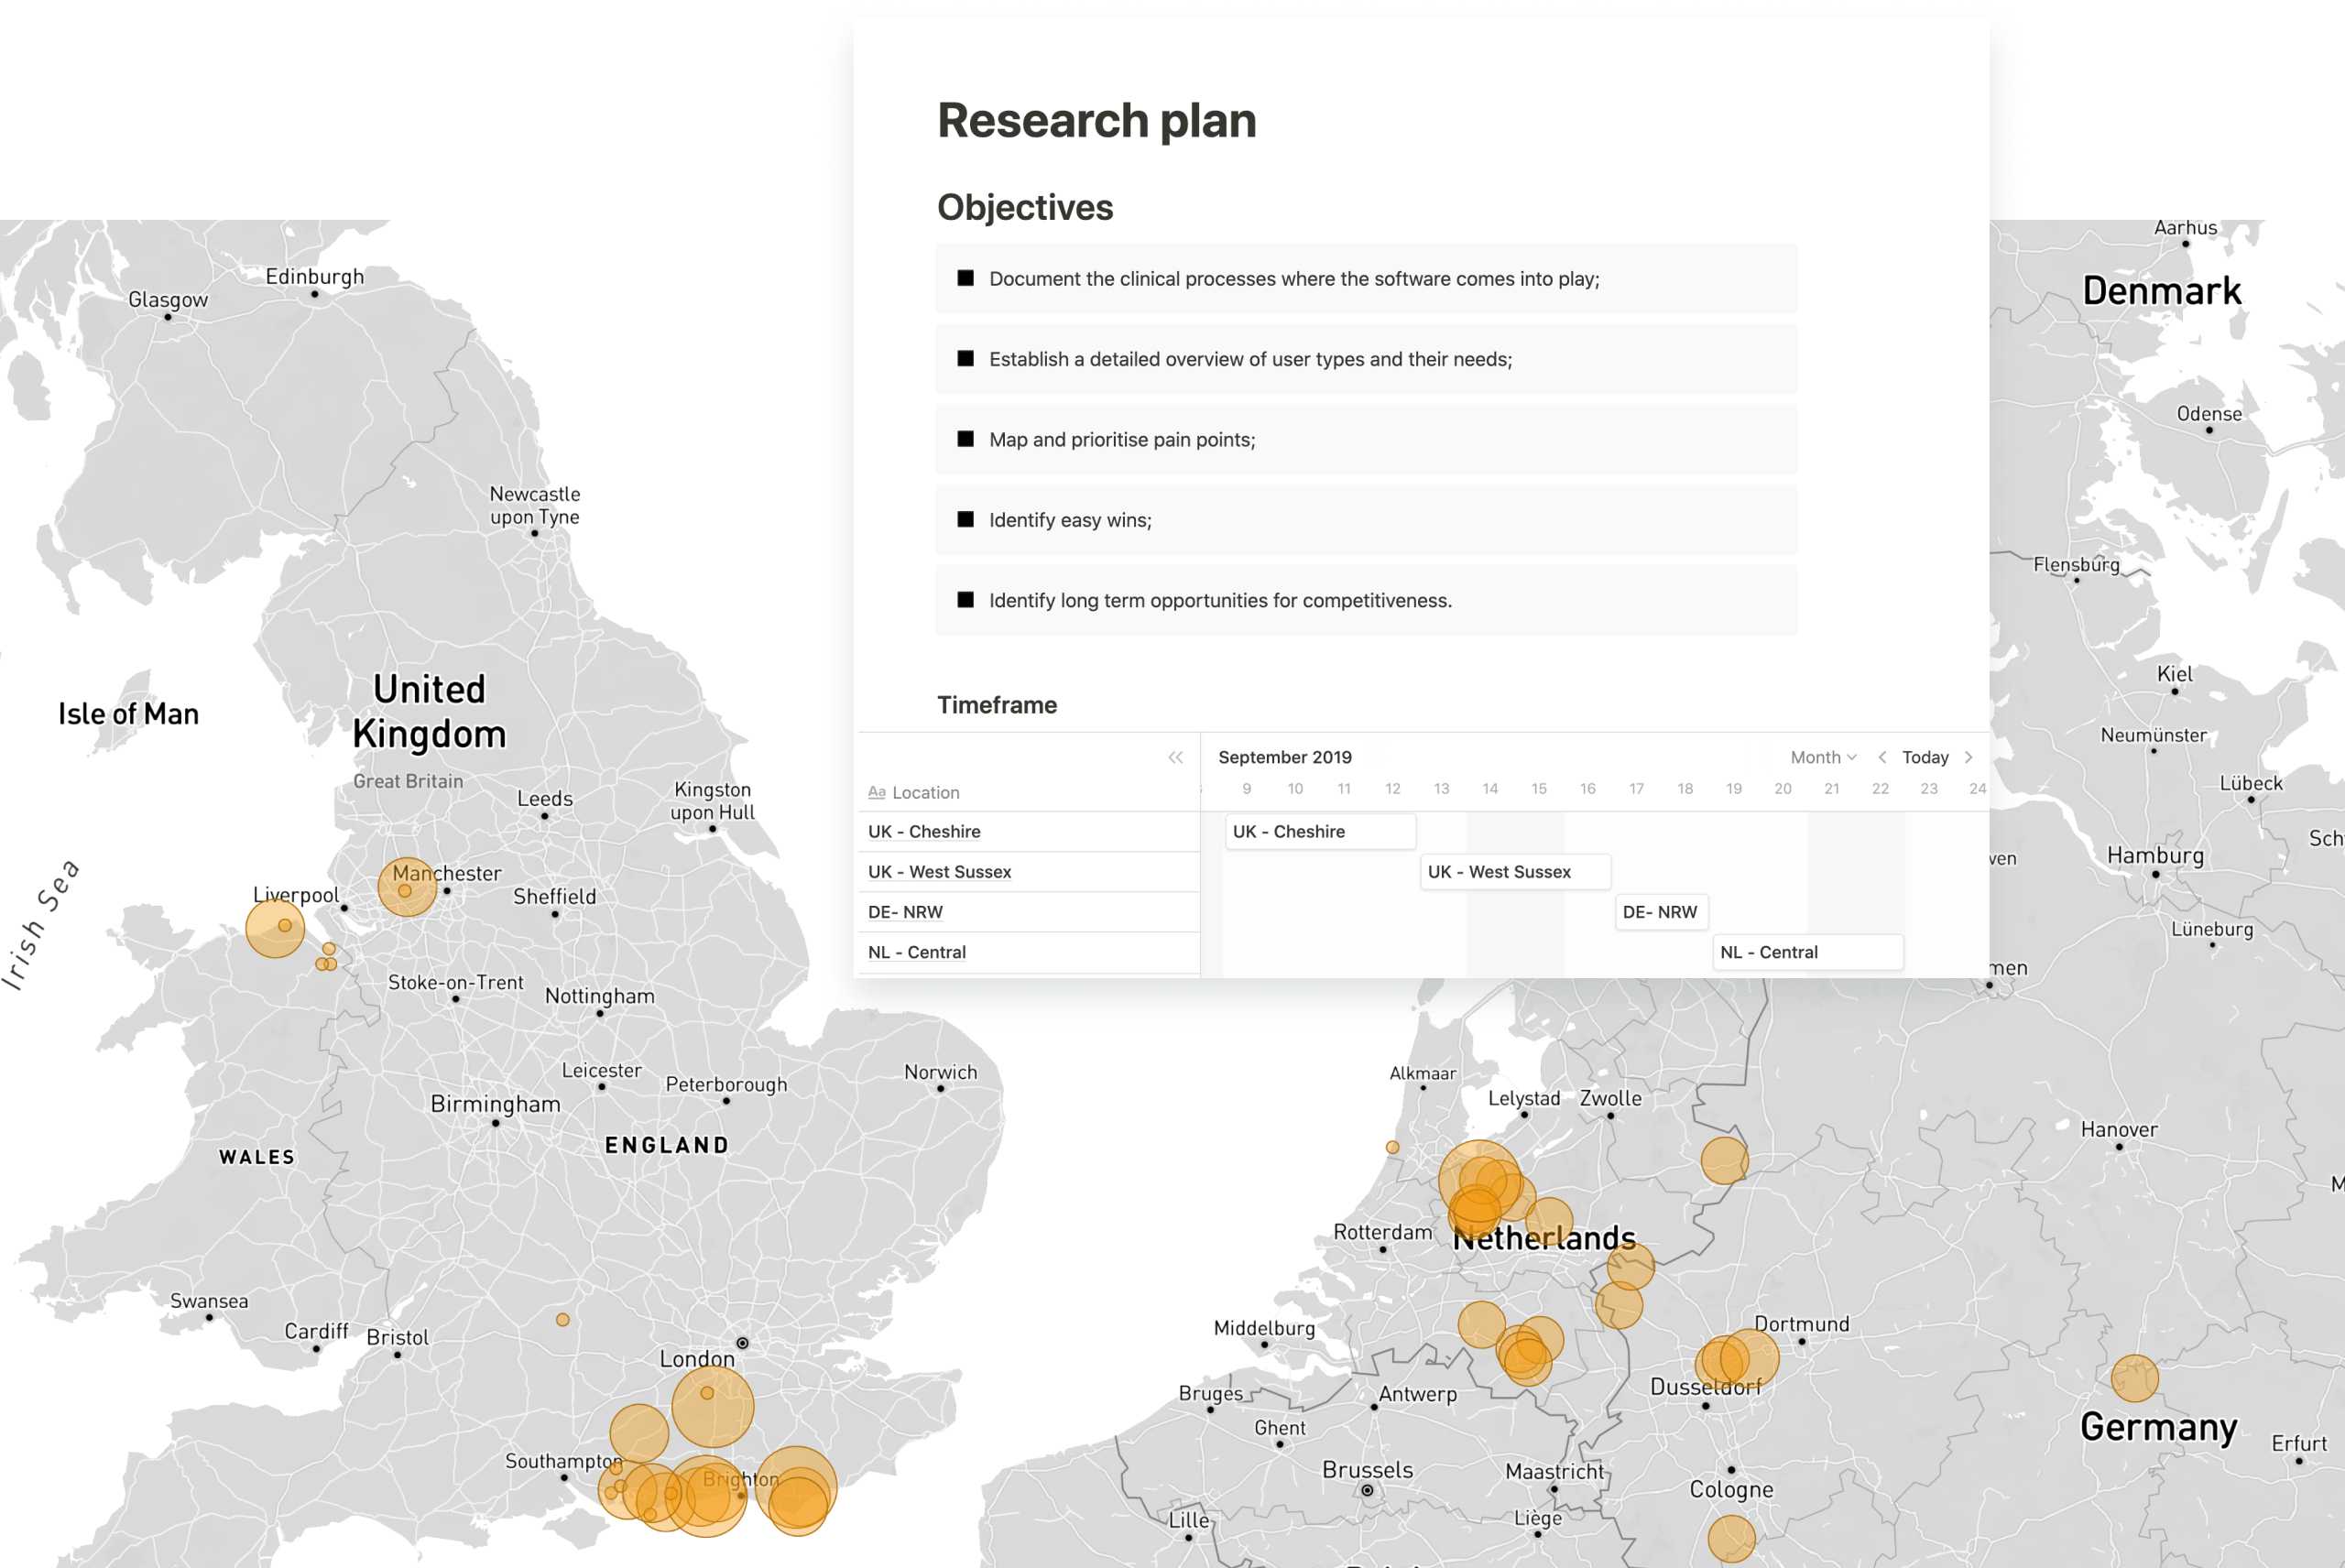 Kort over Storbritannien og Danmark med steder for brugerundersøgelser markeret